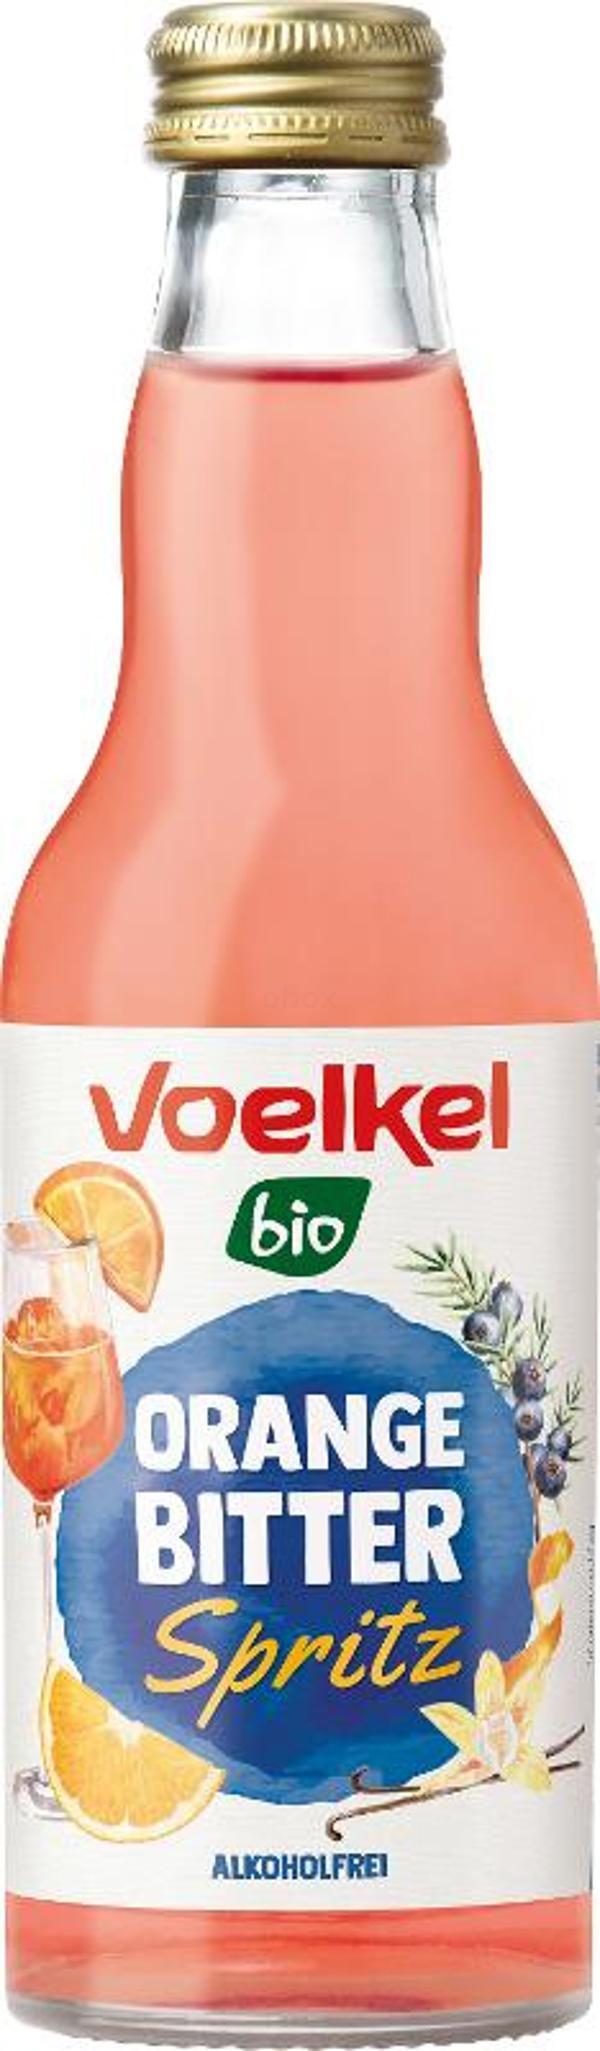 Produktfoto zu Orange Bitter Spritz Cocktail alkoholfrei - 0,2l